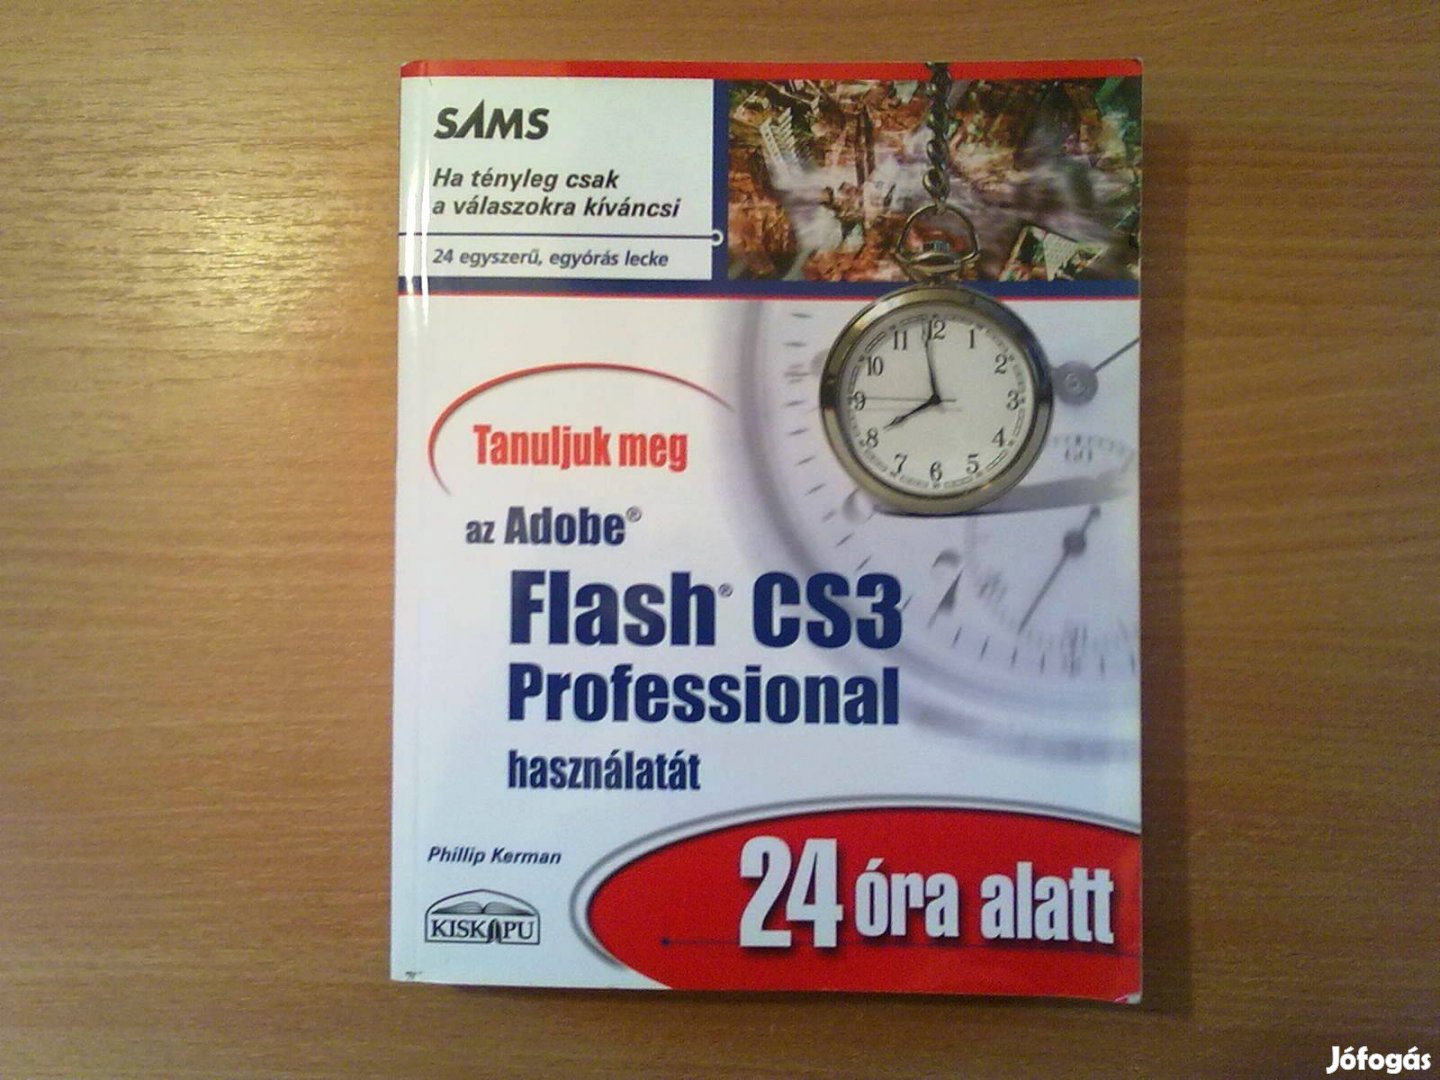 Tanuljuk meg az Adobe Flash CS3 Professional használat 24 óra alatt